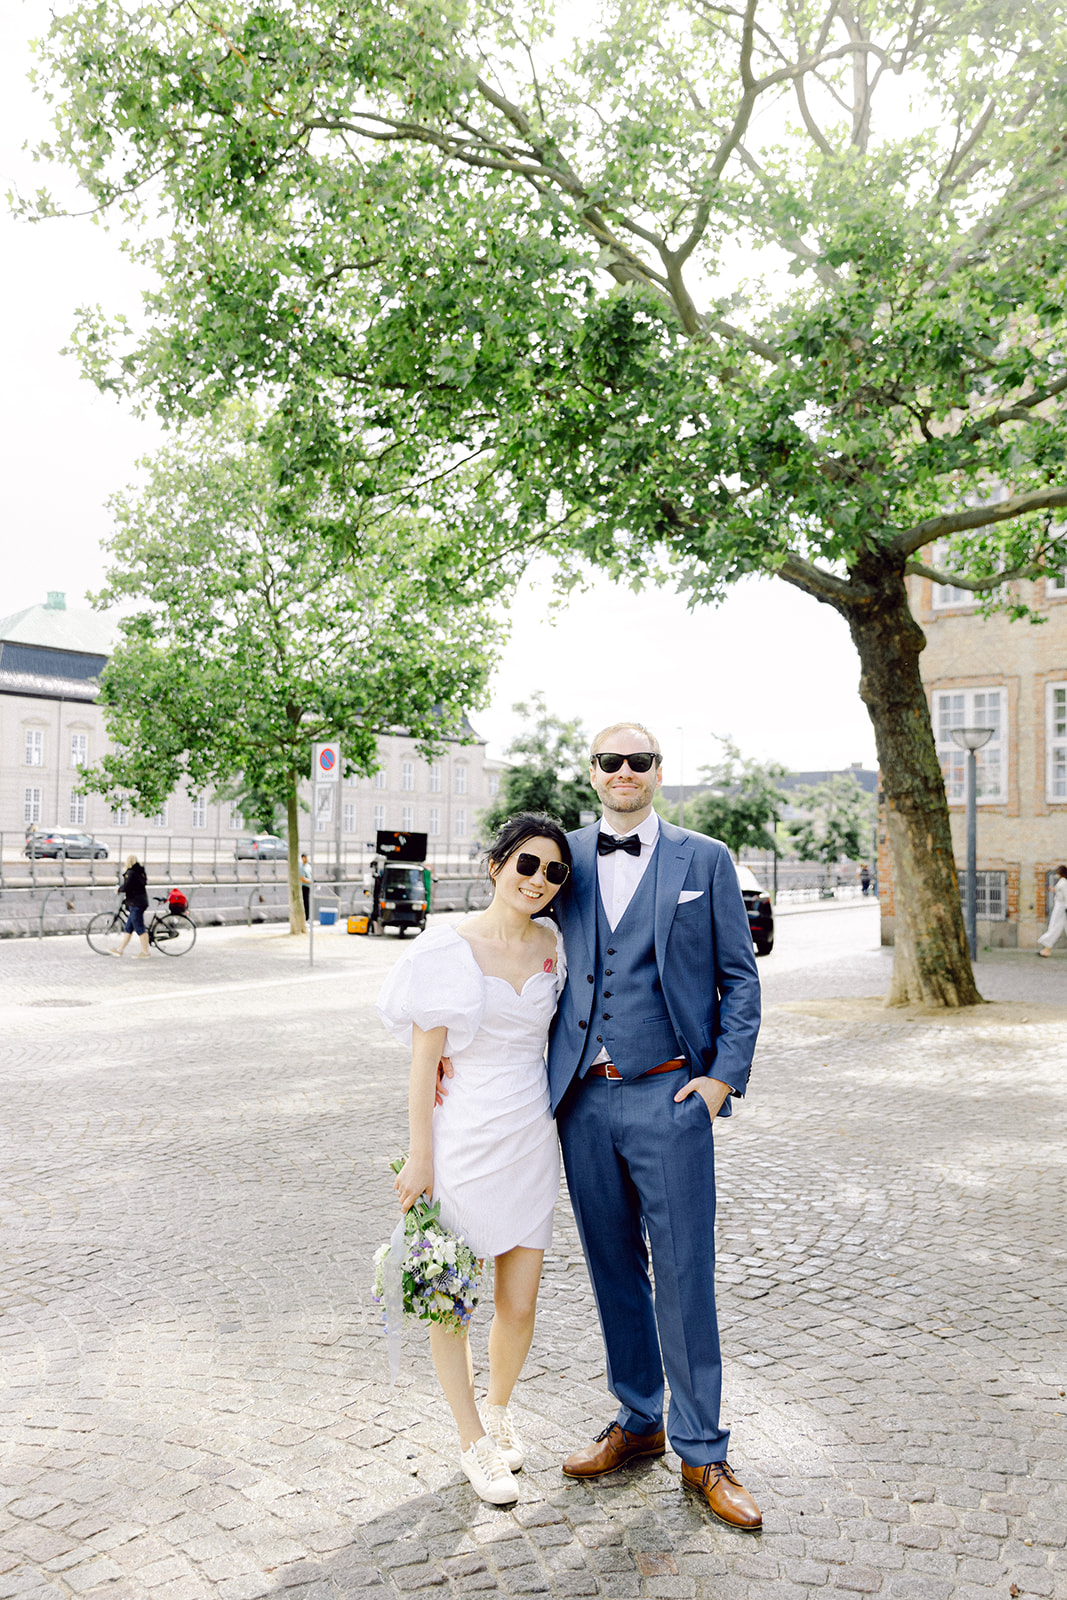 get married in Copenhagen chic couple portrait, dancing 